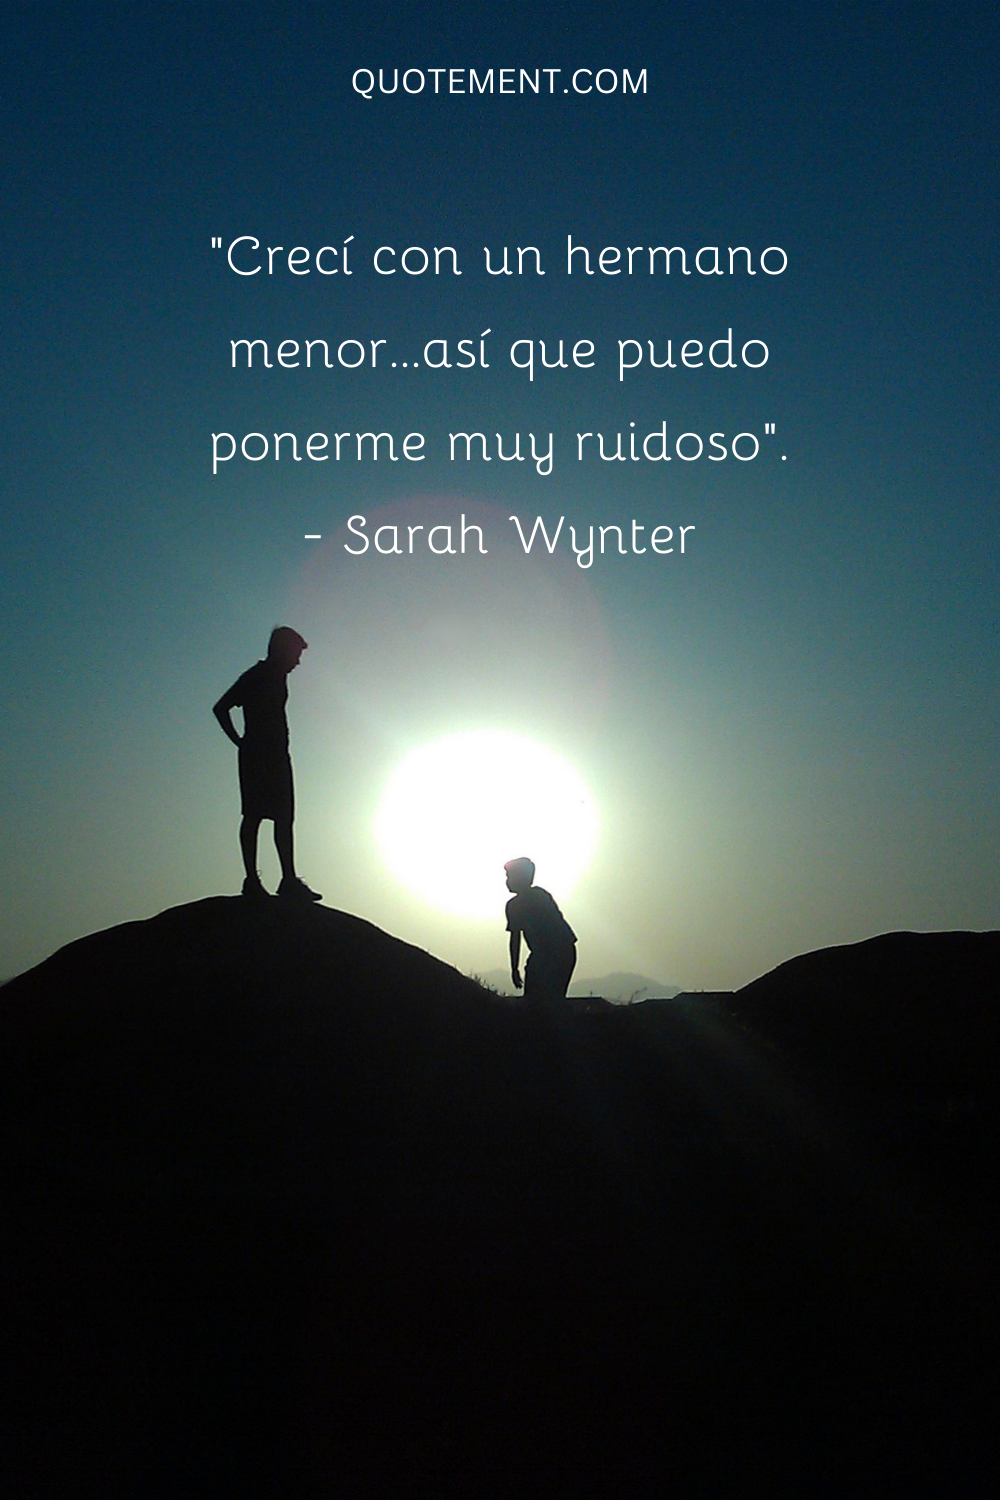 "Crecí con un hermano pequeño, así que puedo llegar a ser bastante revoltosa". - Sarah Wynter